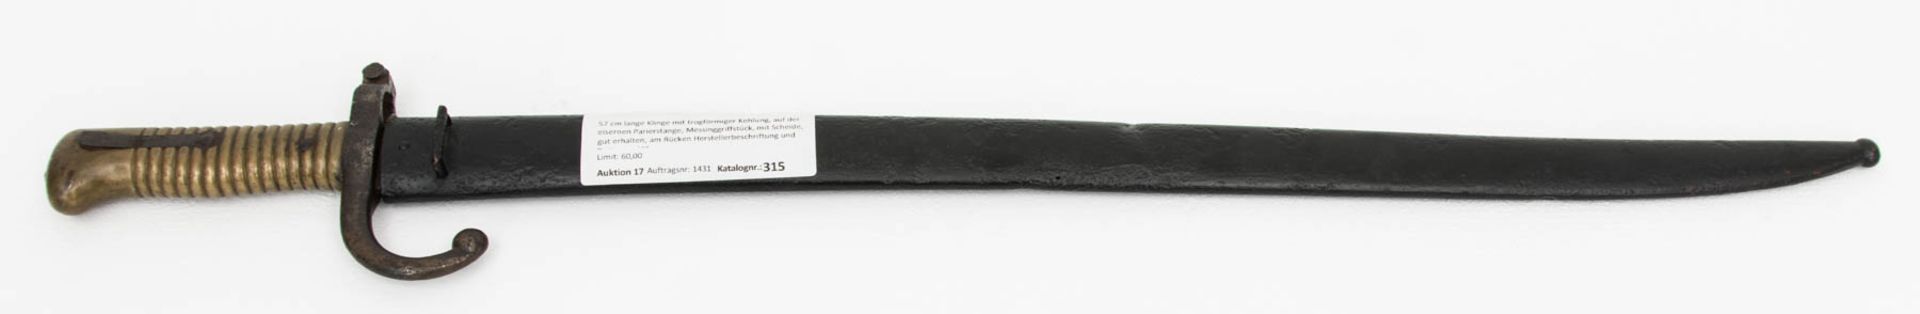 Französisches Jatagan Bajonett, 1869.57 cm lange Klinge mit trogförmiger Kehlung, au